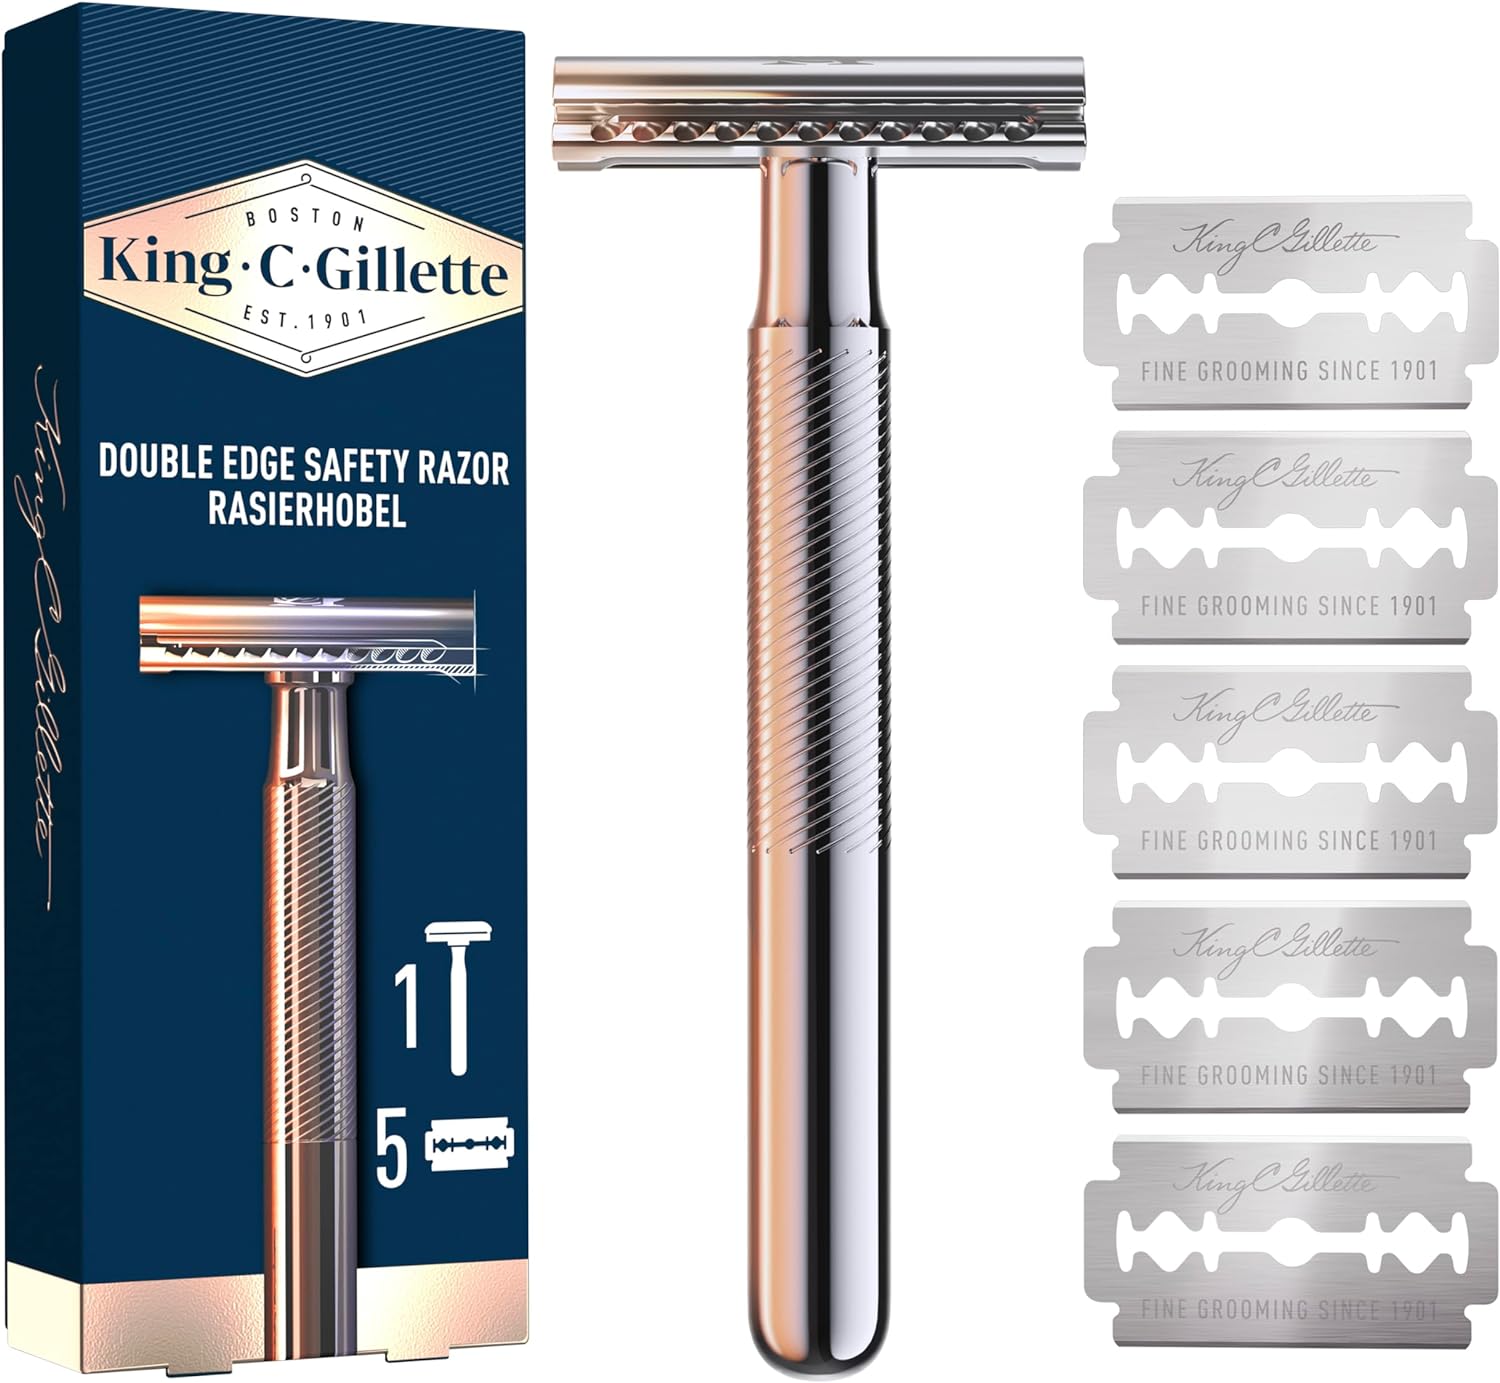 King C. Gillette Double Edge Safety Razor for Men